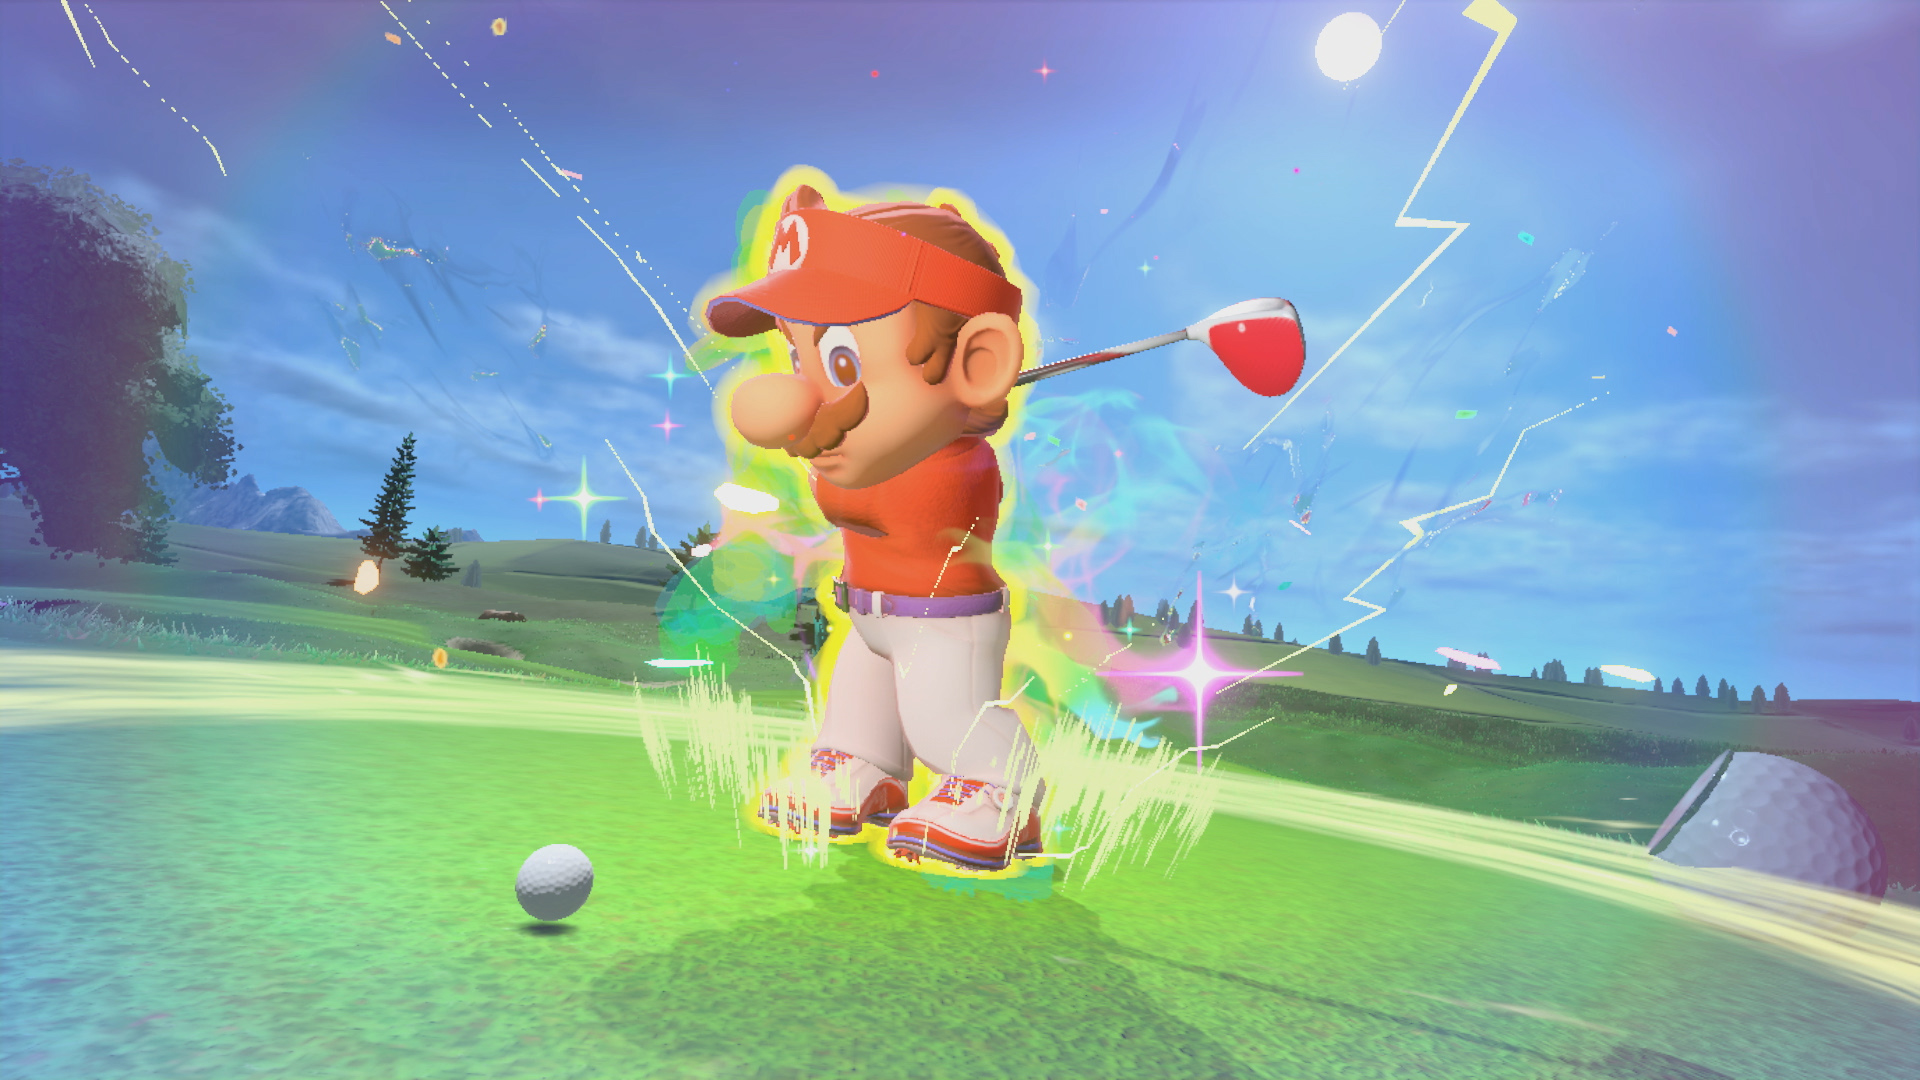 Nintendo présente «Mario Golf: Super Rush» pour les modes de golf rapide et de bataille royale